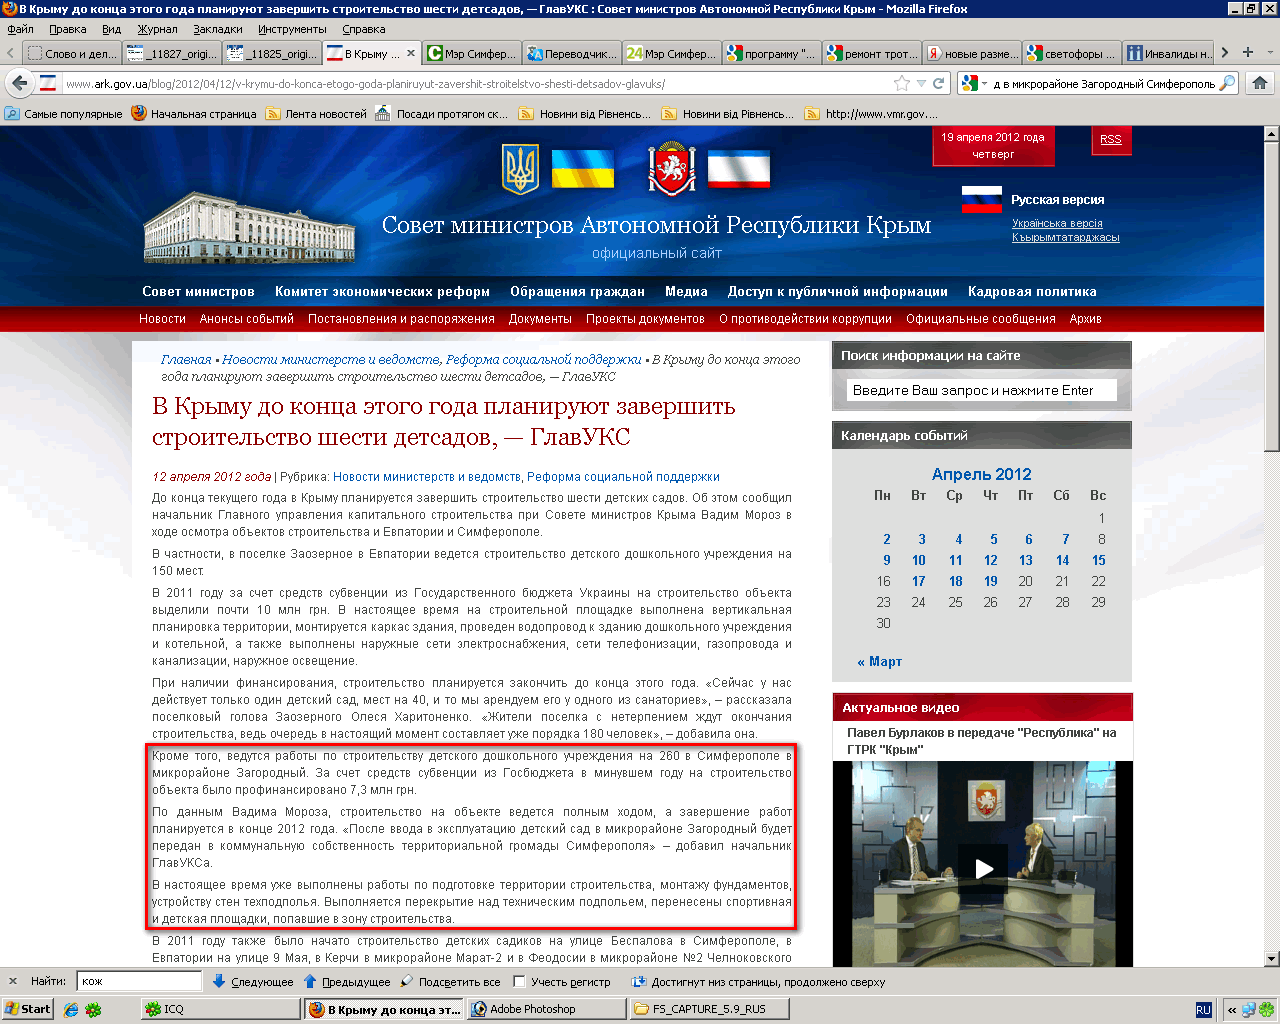 http://www.ark.gov.ua/blog/2012/04/12/v-krymu-do-konca-etogo-goda-planiruyut-zavershit-stroitelstvo-shesti-detsadov-glavuks/